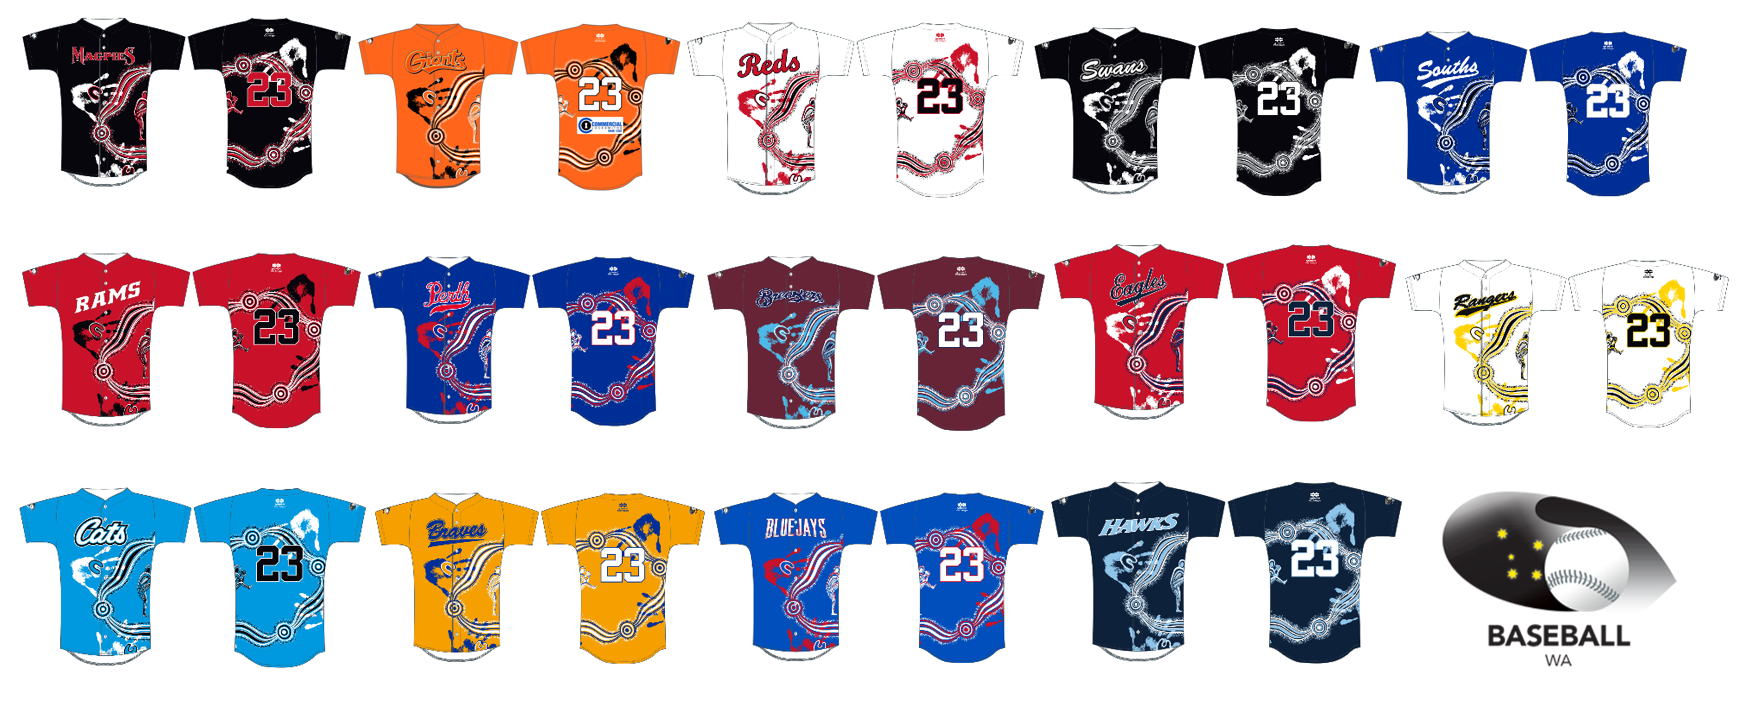 Baseball WA Reveals Indigenous Jersey Design - Baseball WA